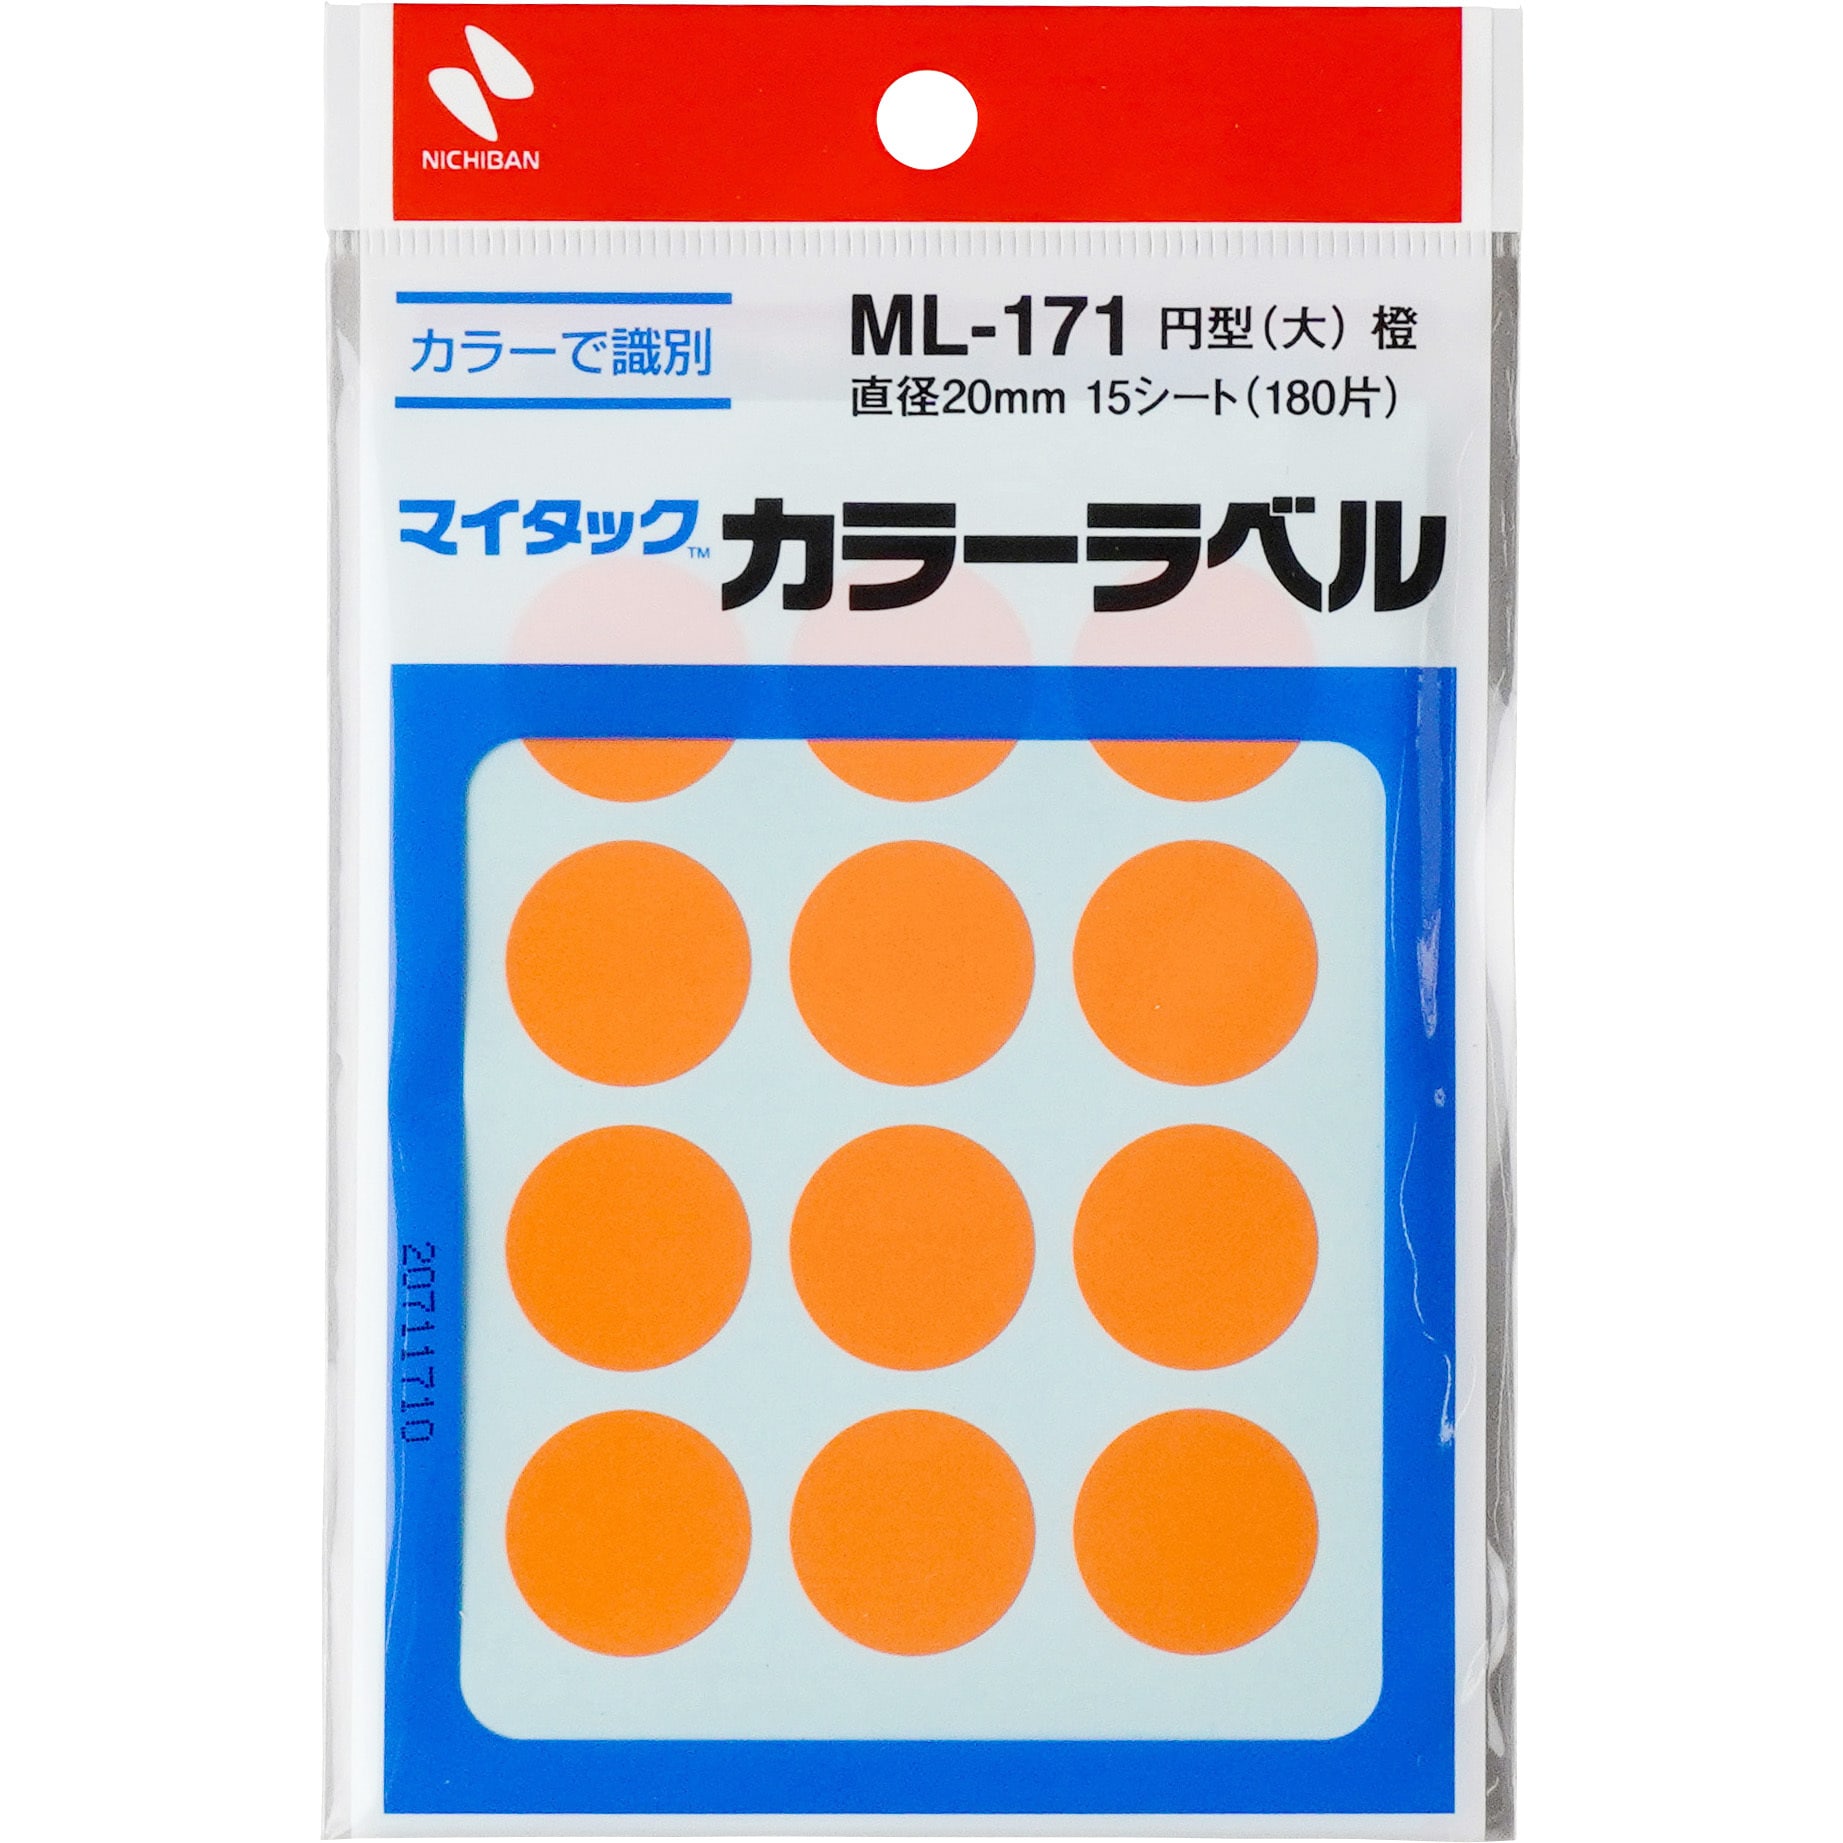 ML-171-13 オレンジ マイタックラベル 丸 1パック(12片×15シート